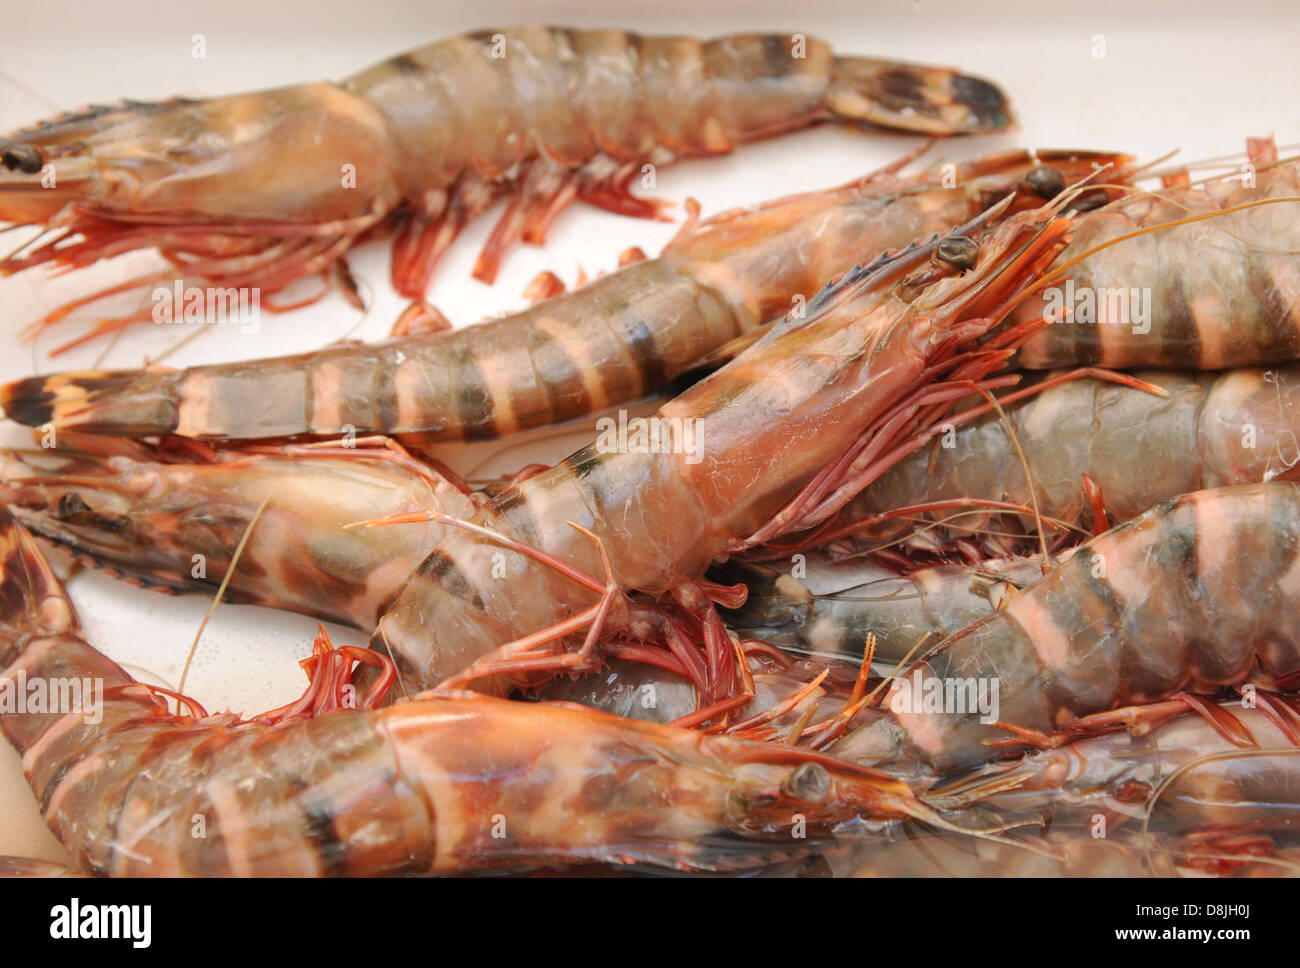 Penaeus monodon, often called the giant tiger prawn. Stock Photo